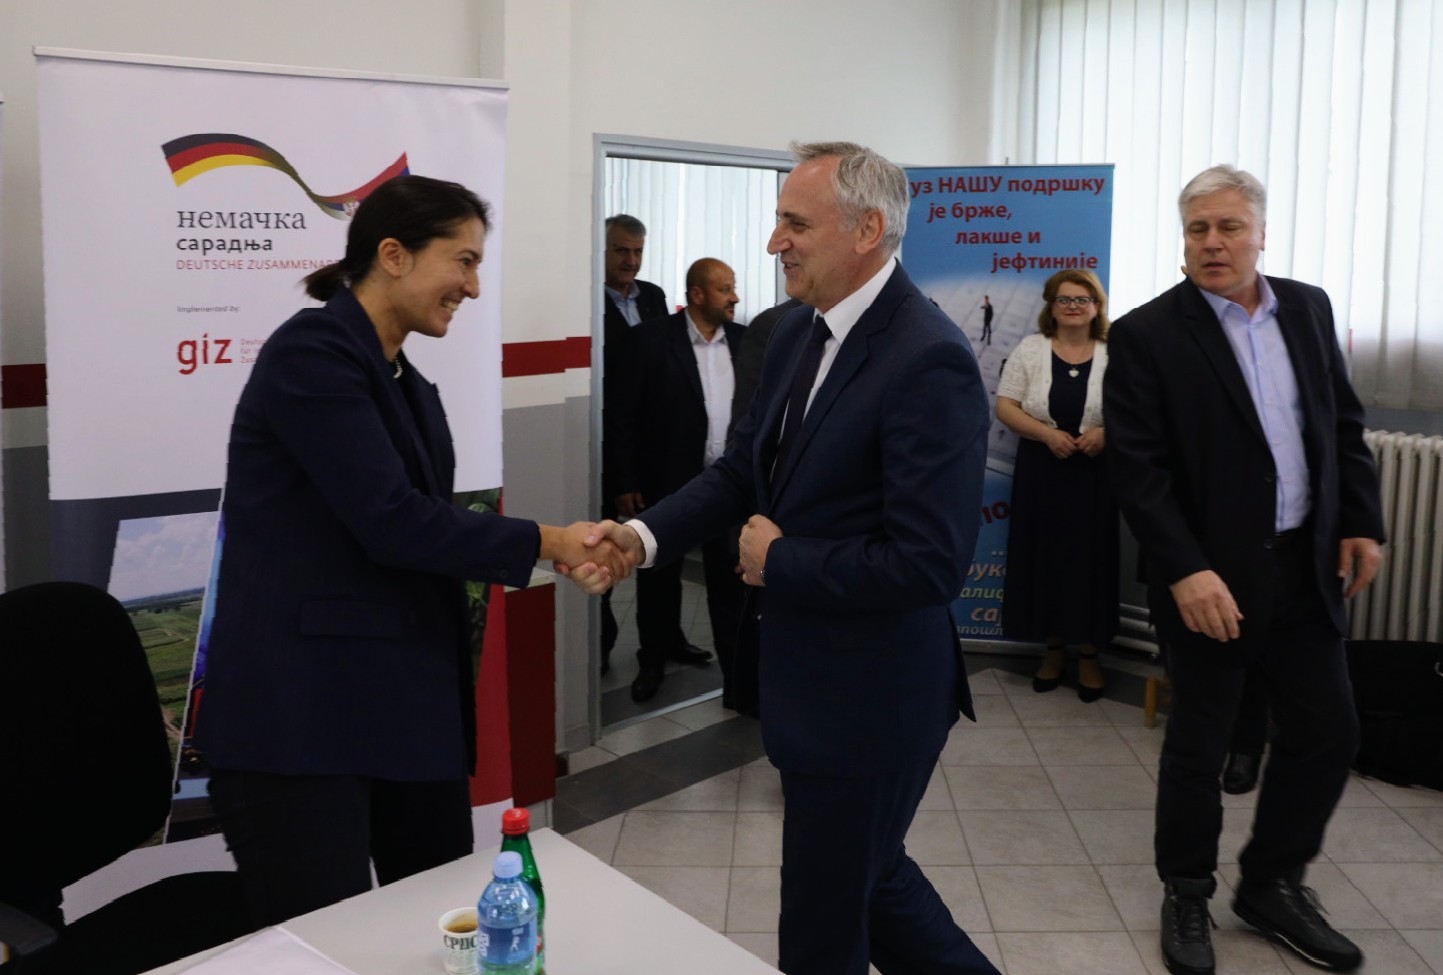 НСЗ отворила Миграциони сервисни центар у Врању